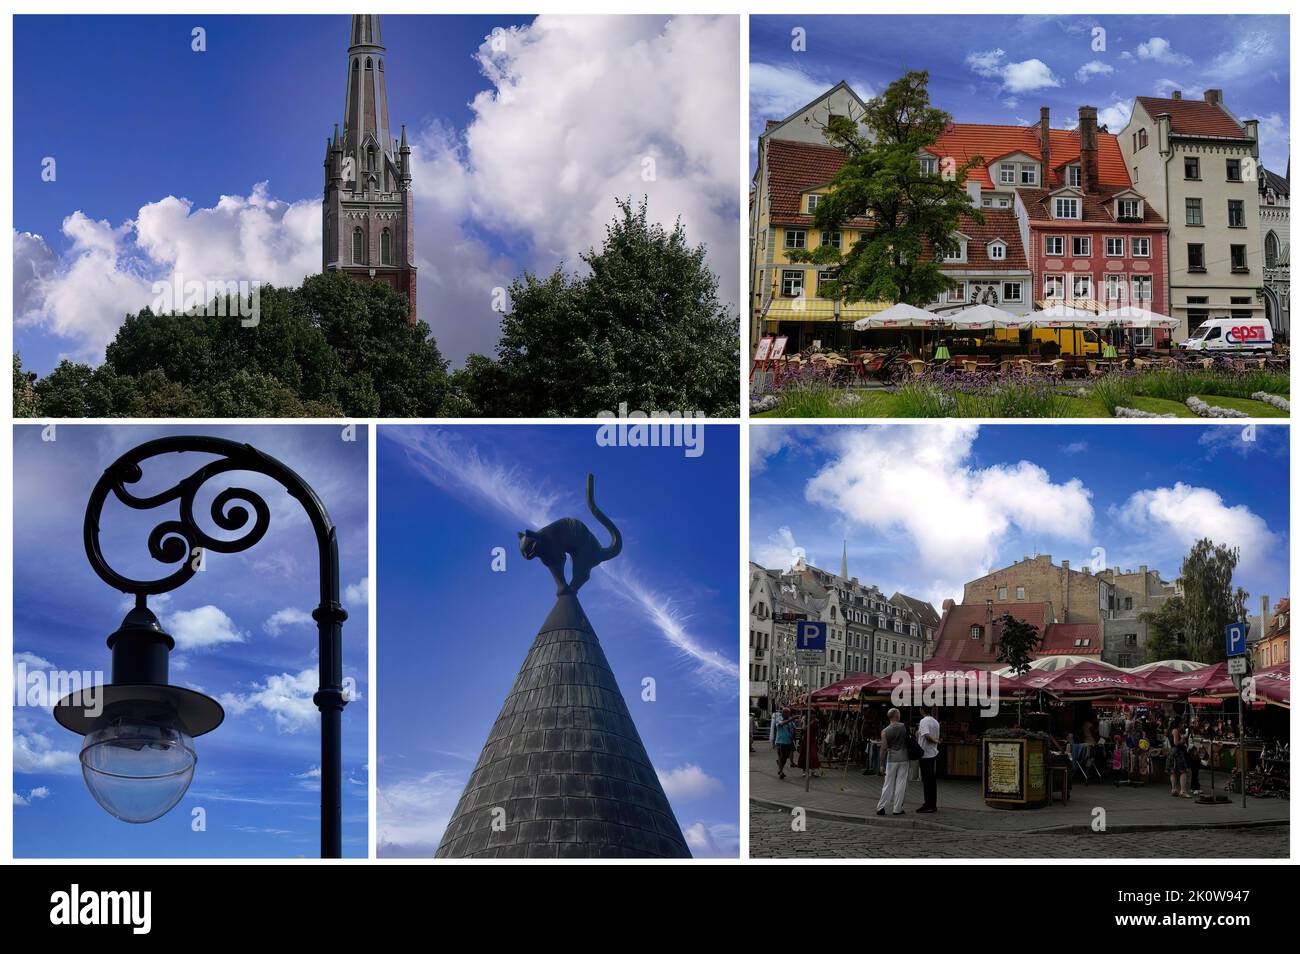 Die wunderschöne Altstadt von Riga (Lettland) mit ihren charakteristischen Gebäuden und ihren gepflasterten Gassen. Seit 1997 UNESCO-Weltkulturerbe (2) Stockfoto